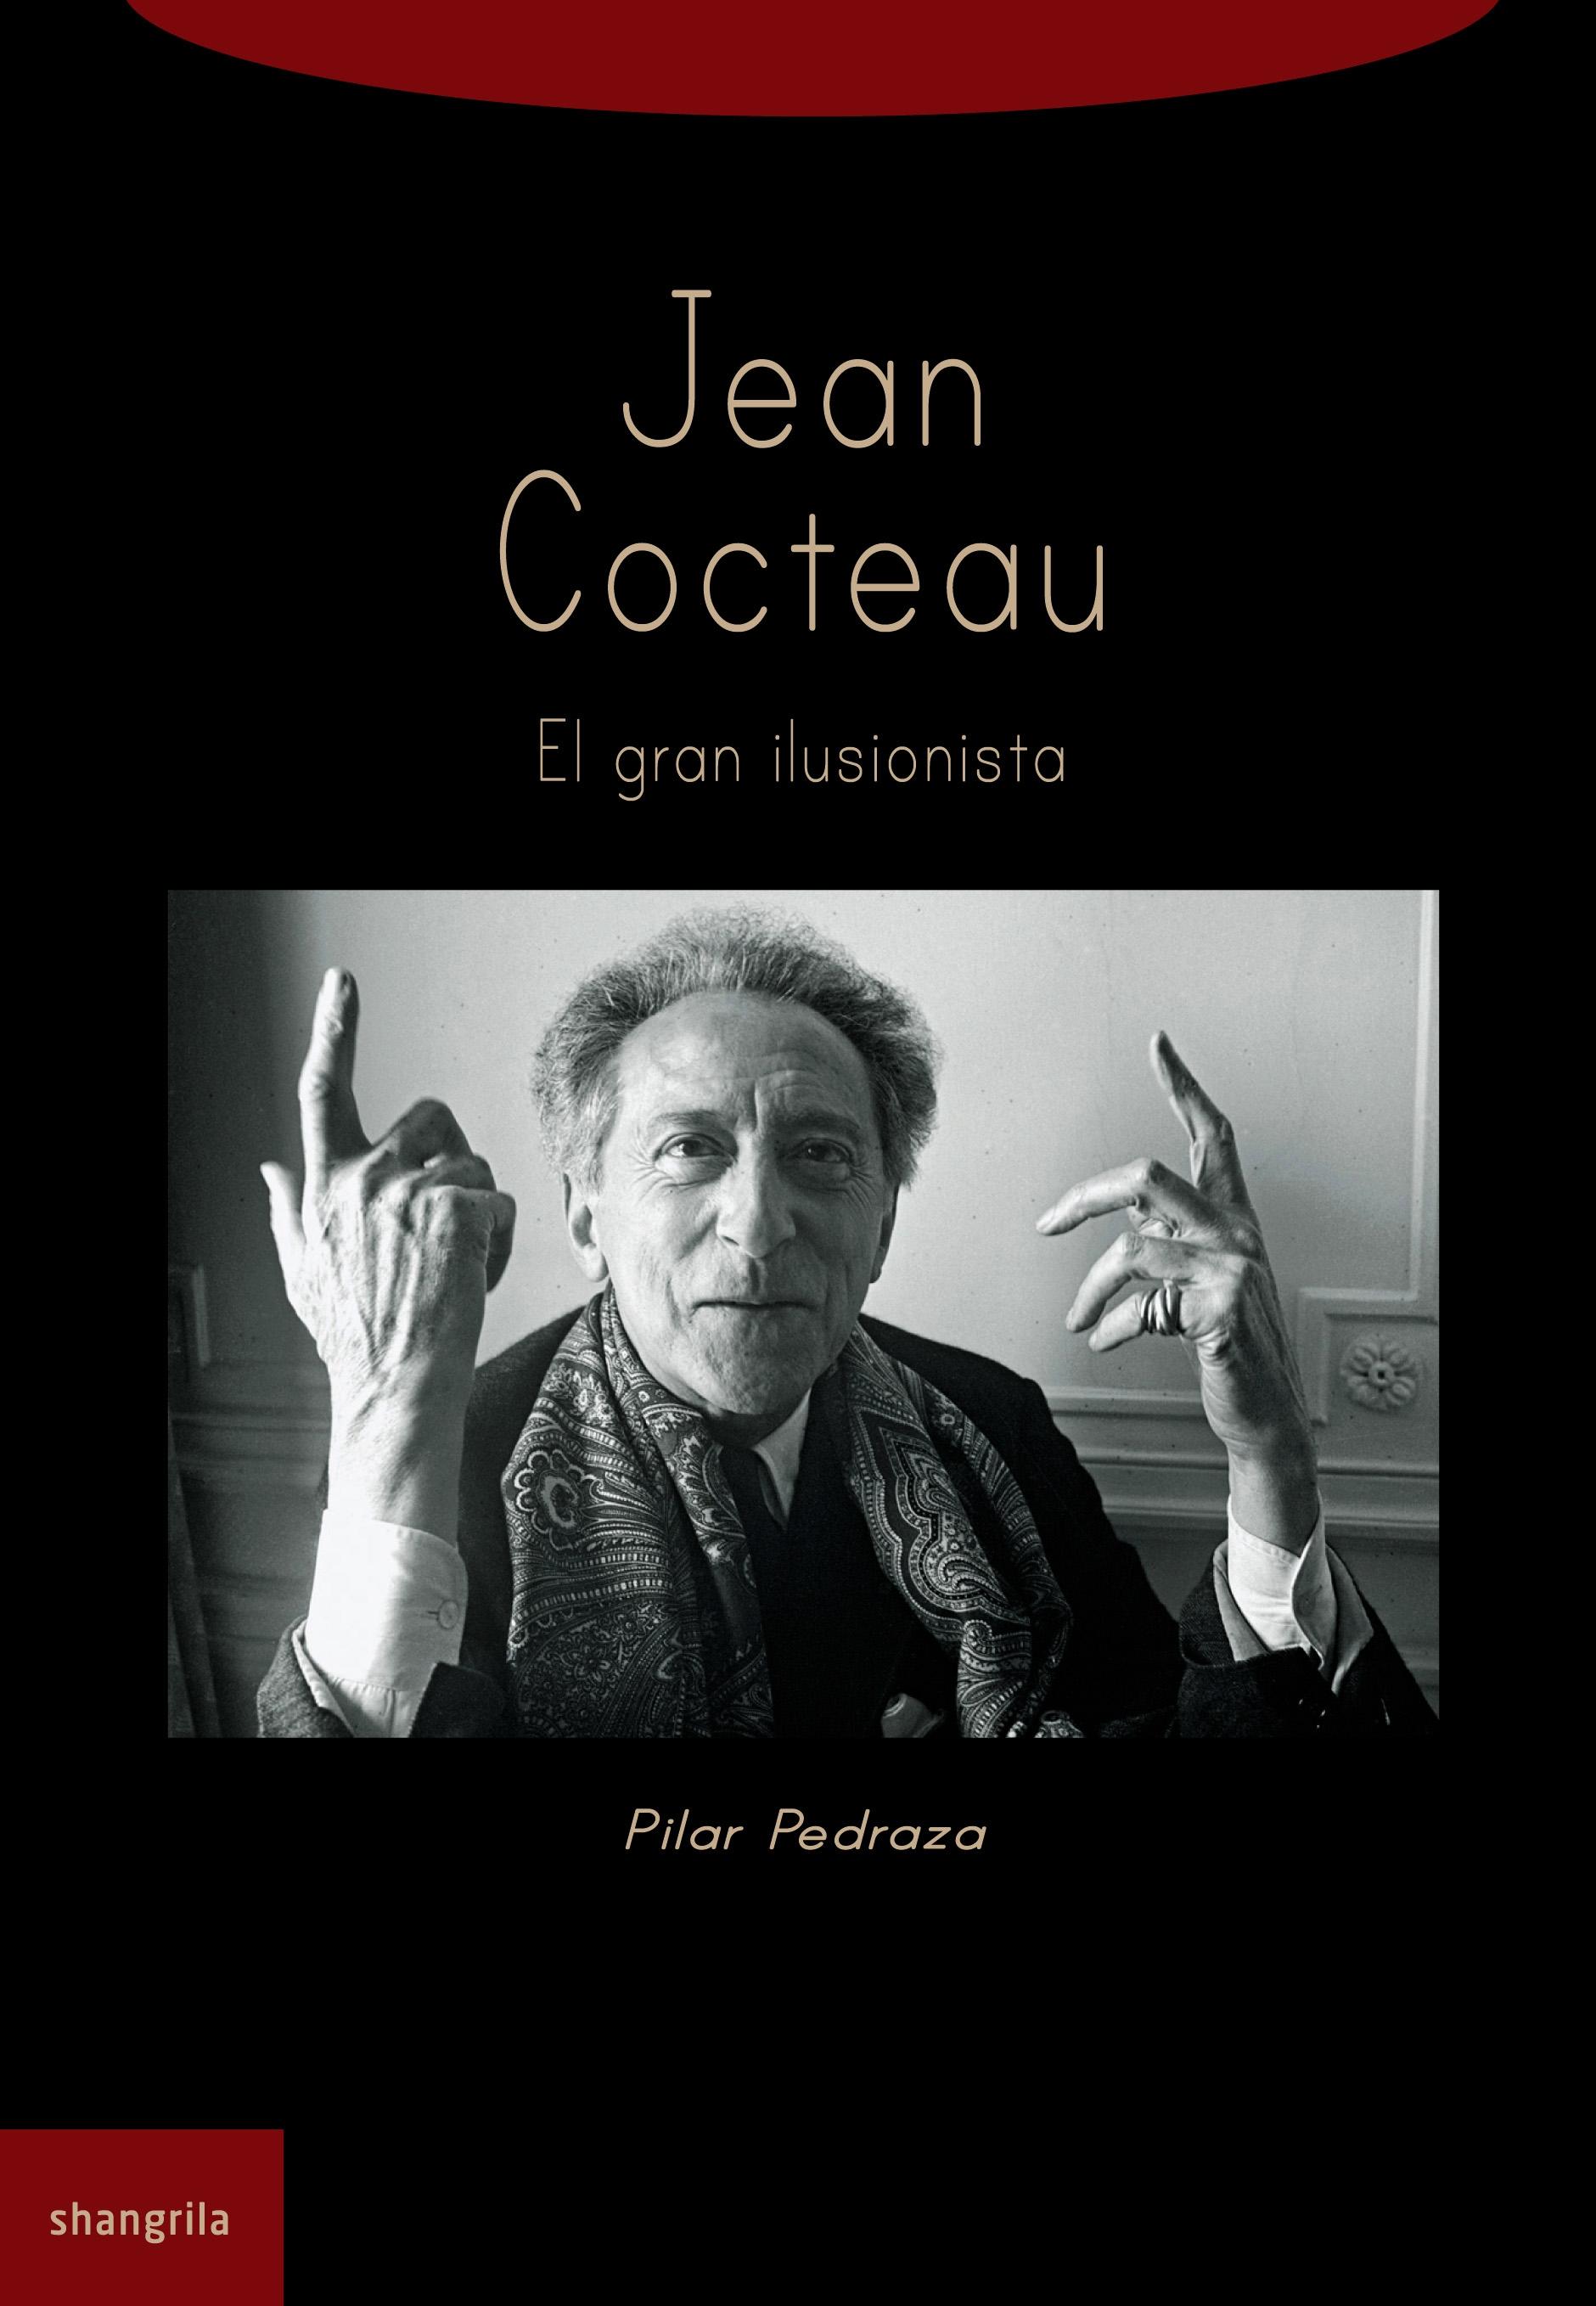 Jean Cocteau "El gran ilusionista"